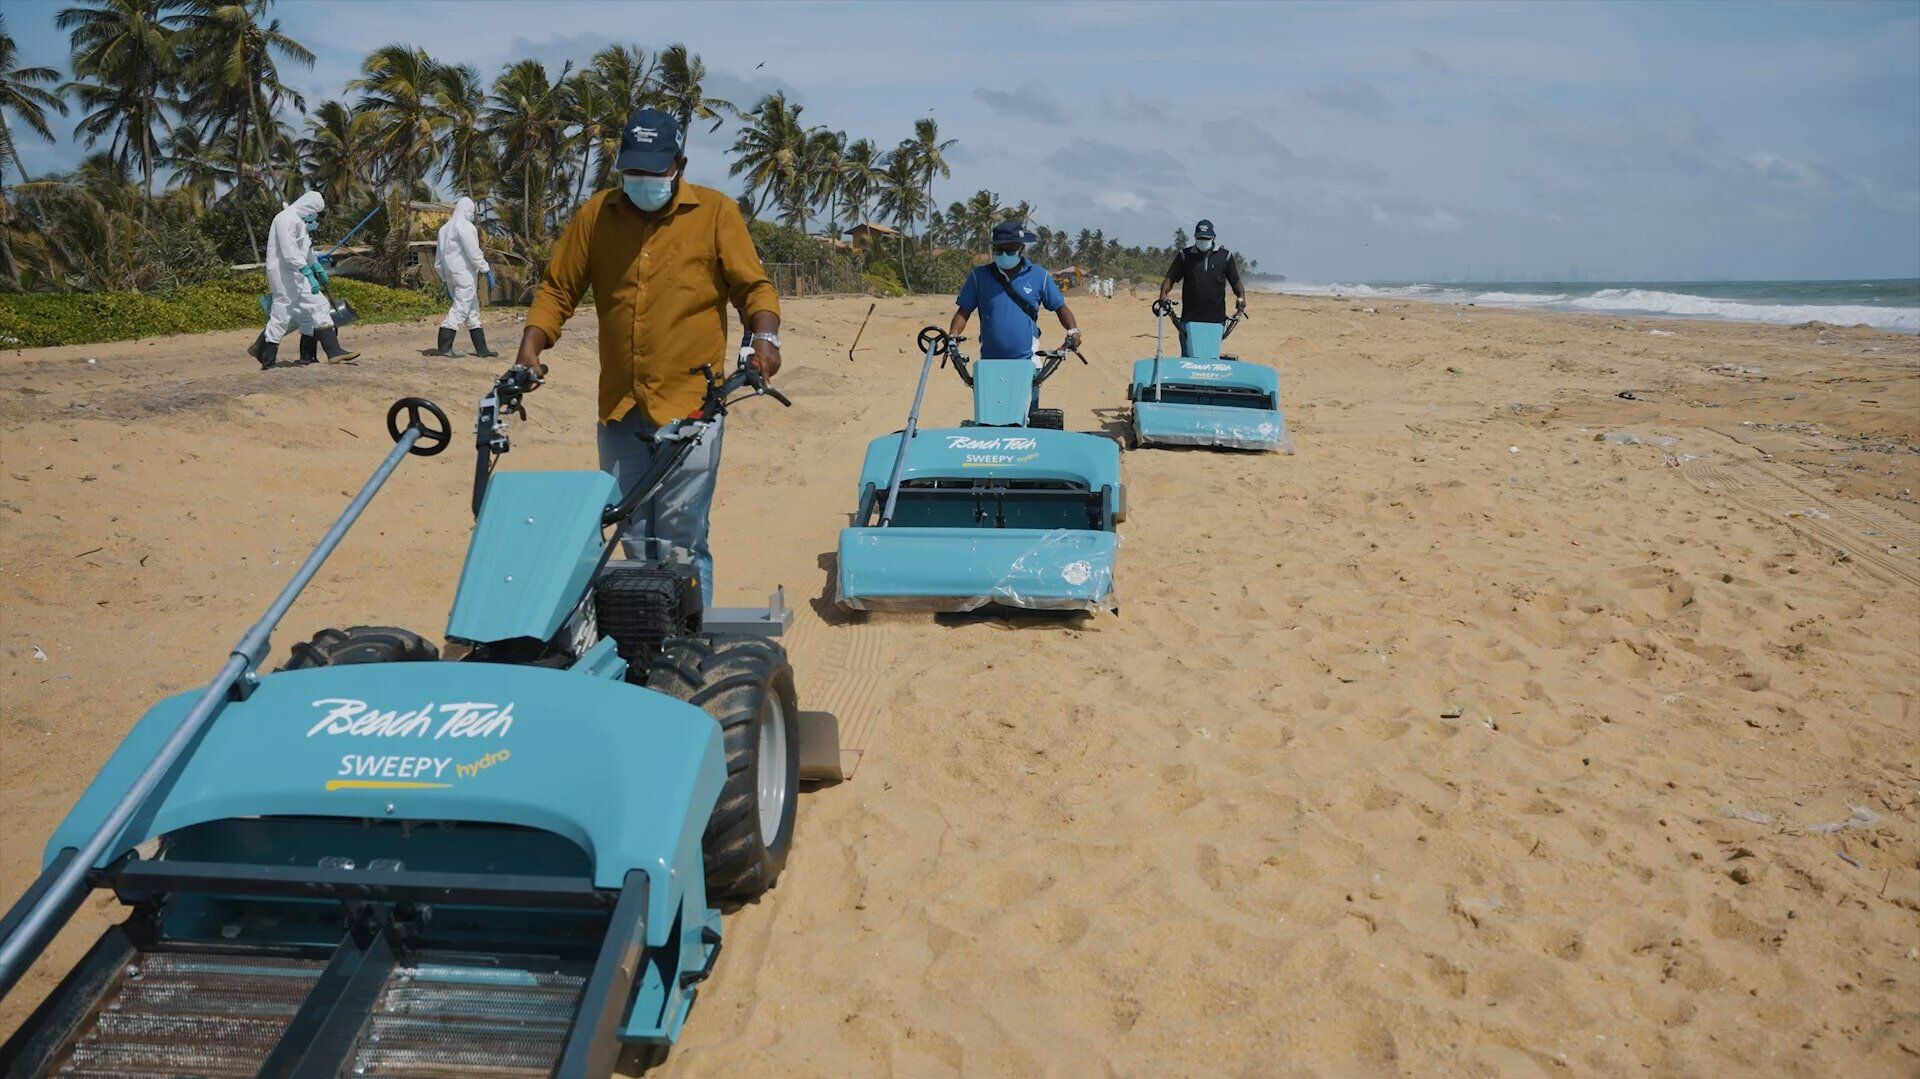 Trois nettoyeurs de plage BeachTech sont utilisés sur la plage du Sri Lanka pour tamiser les nurdles du sable.